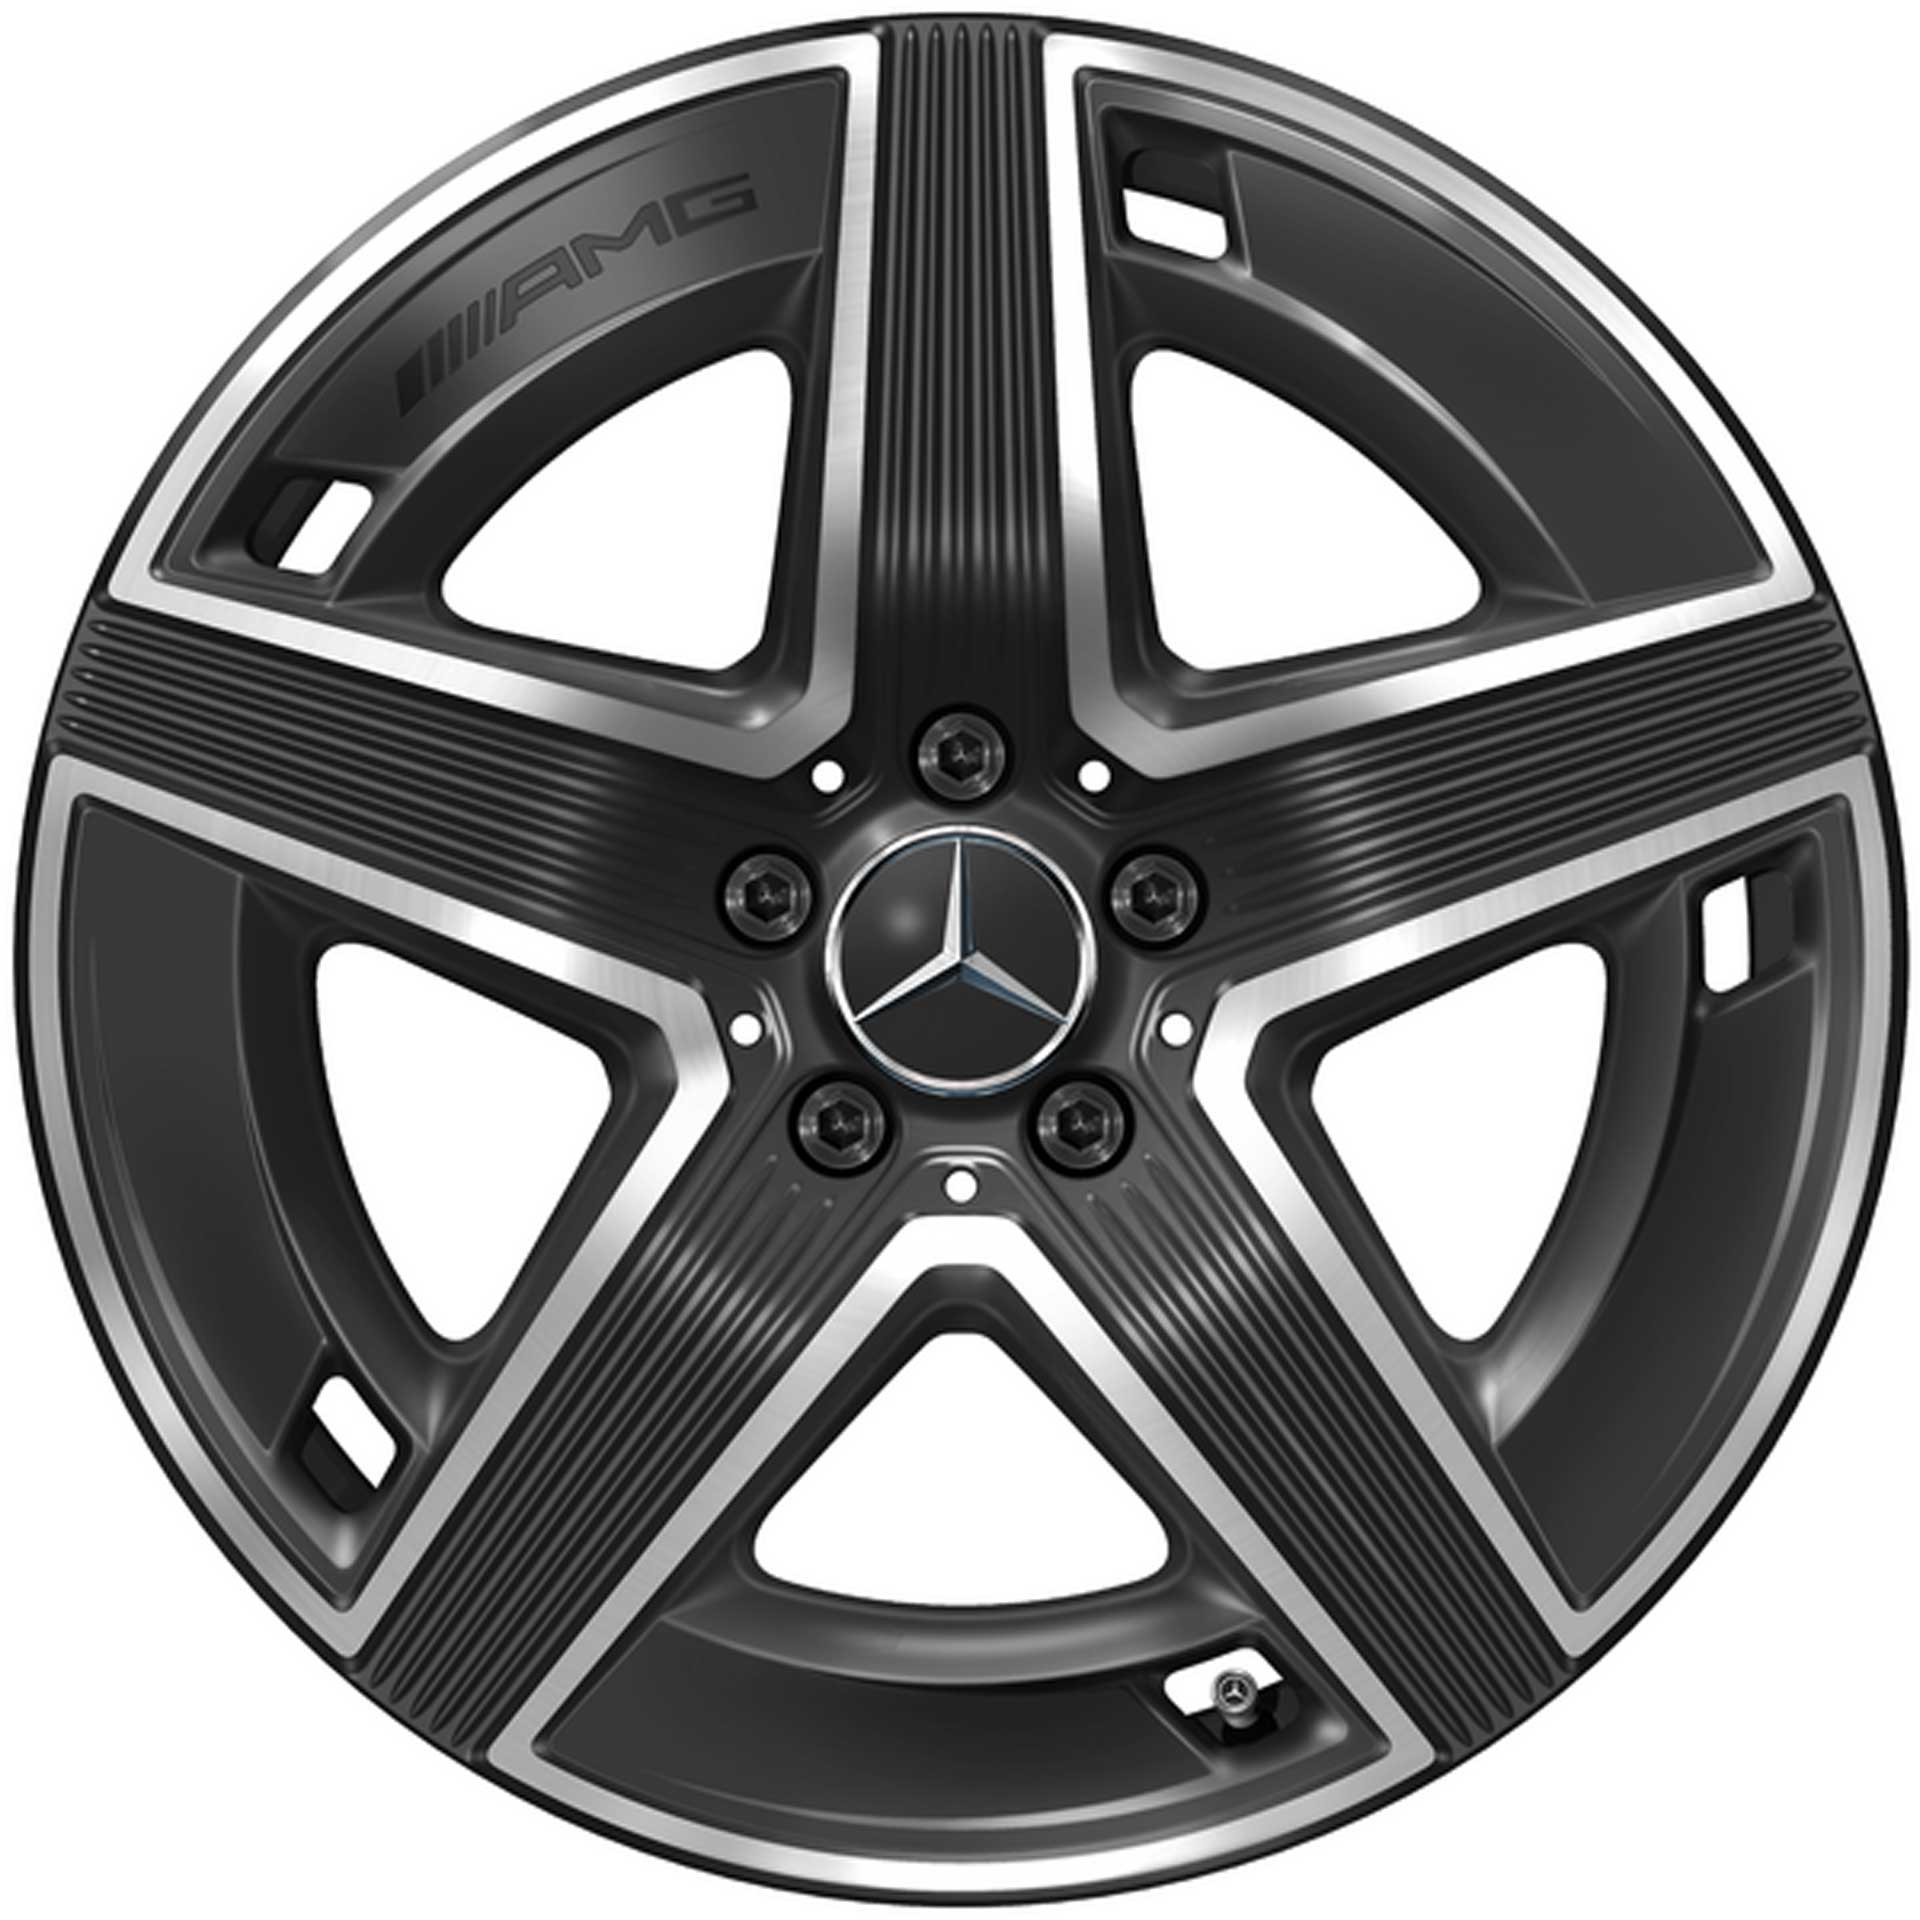 Mercedes-AMG 5-Speichen-Rad 19 Zoll Leichtmetallfelge GLC X254 schwarz glanzgedreht A25440104007X23